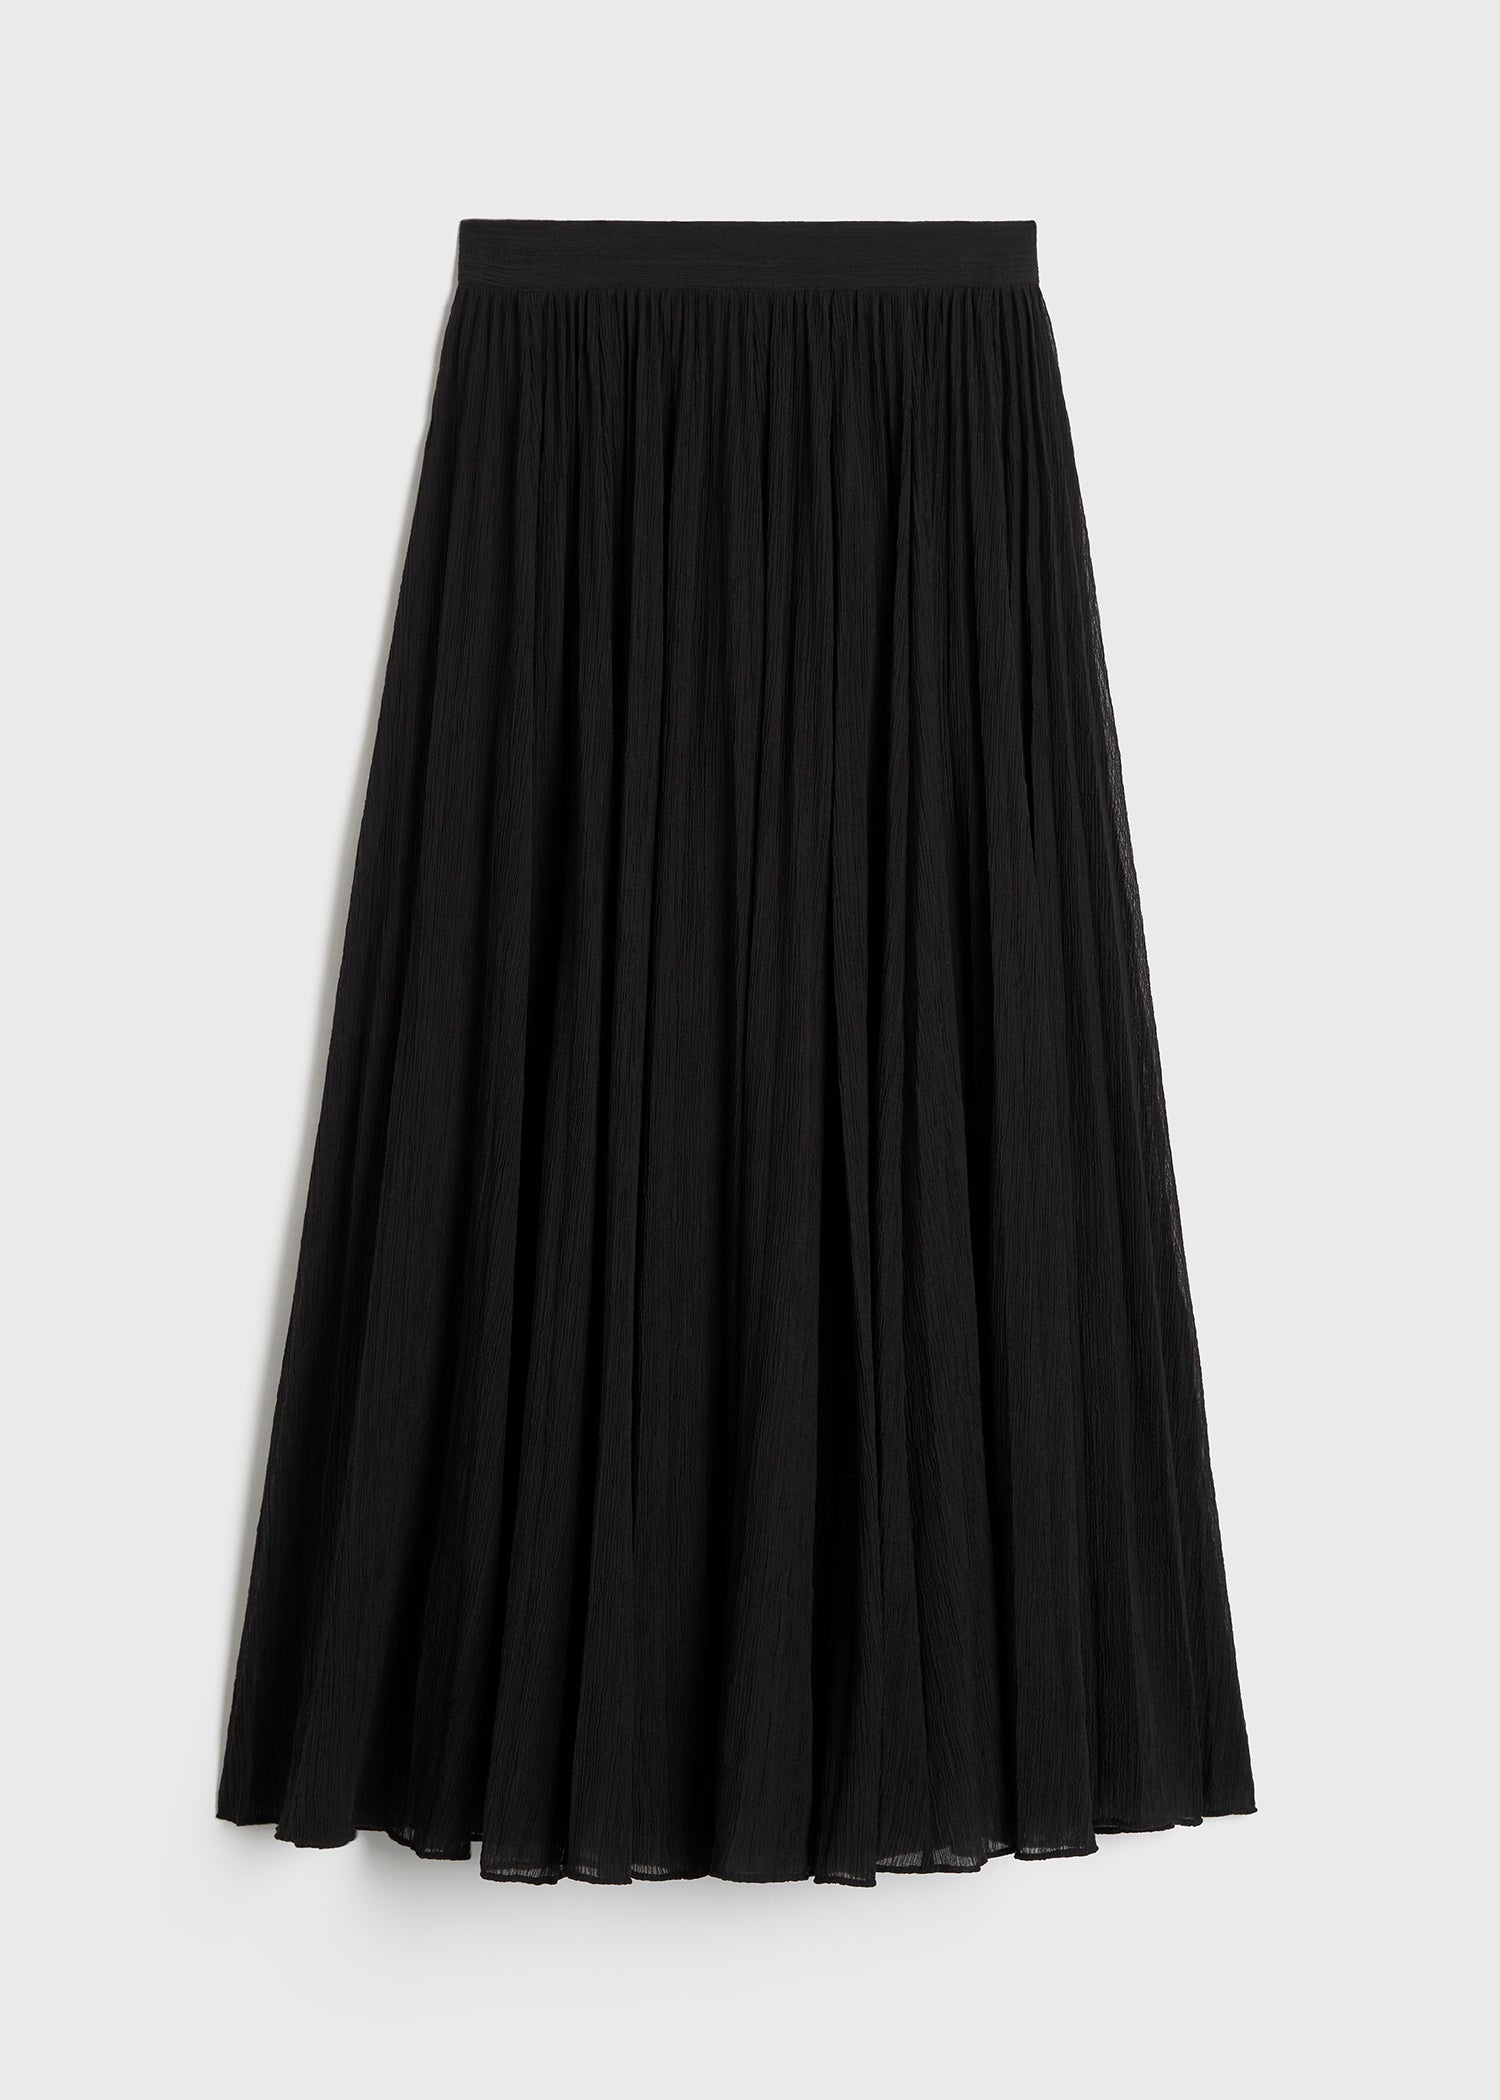 Crinkled plissé skirt black - 1